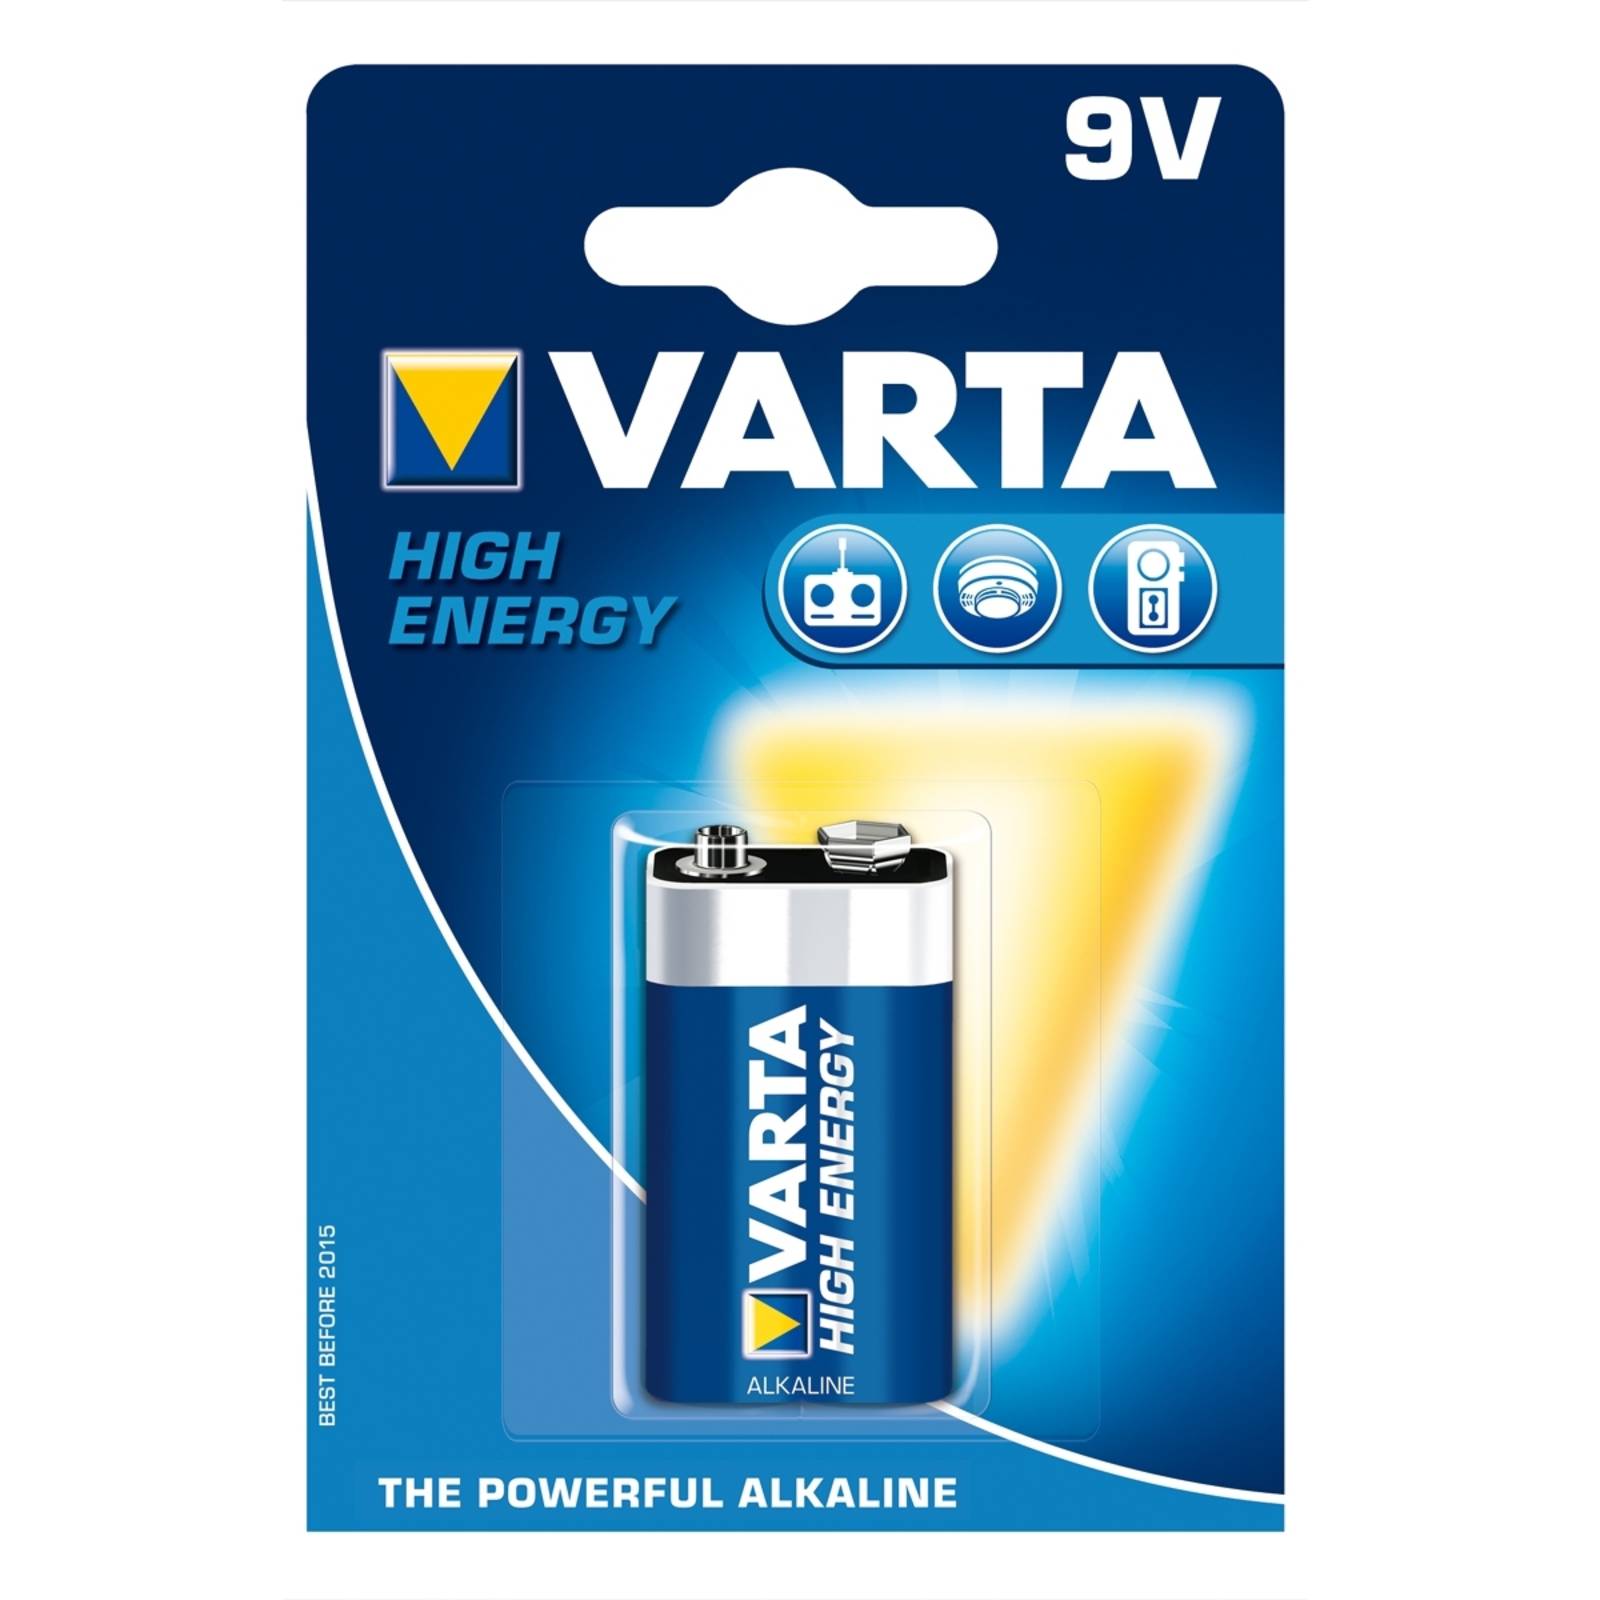 9V E-Block VARTA High Energy